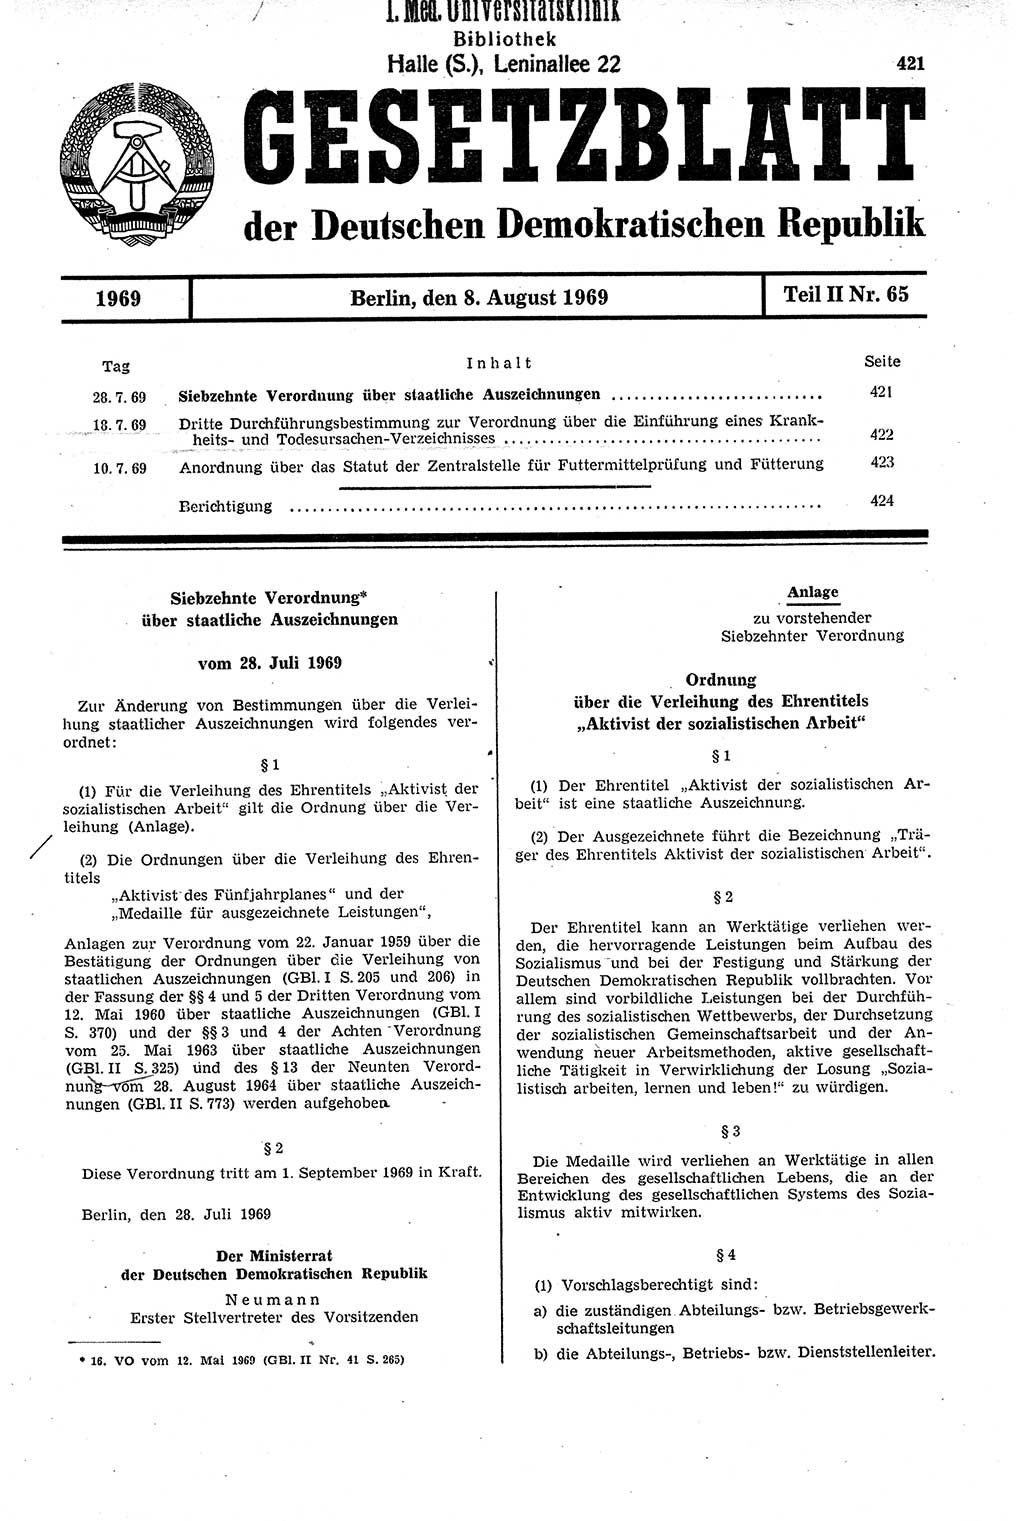 Gesetzblatt (GBl.) der Deutschen Demokratischen Republik (DDR) Teil ⅠⅠ 1969, Seite 421 (GBl. DDR ⅠⅠ 1969, S. 421)